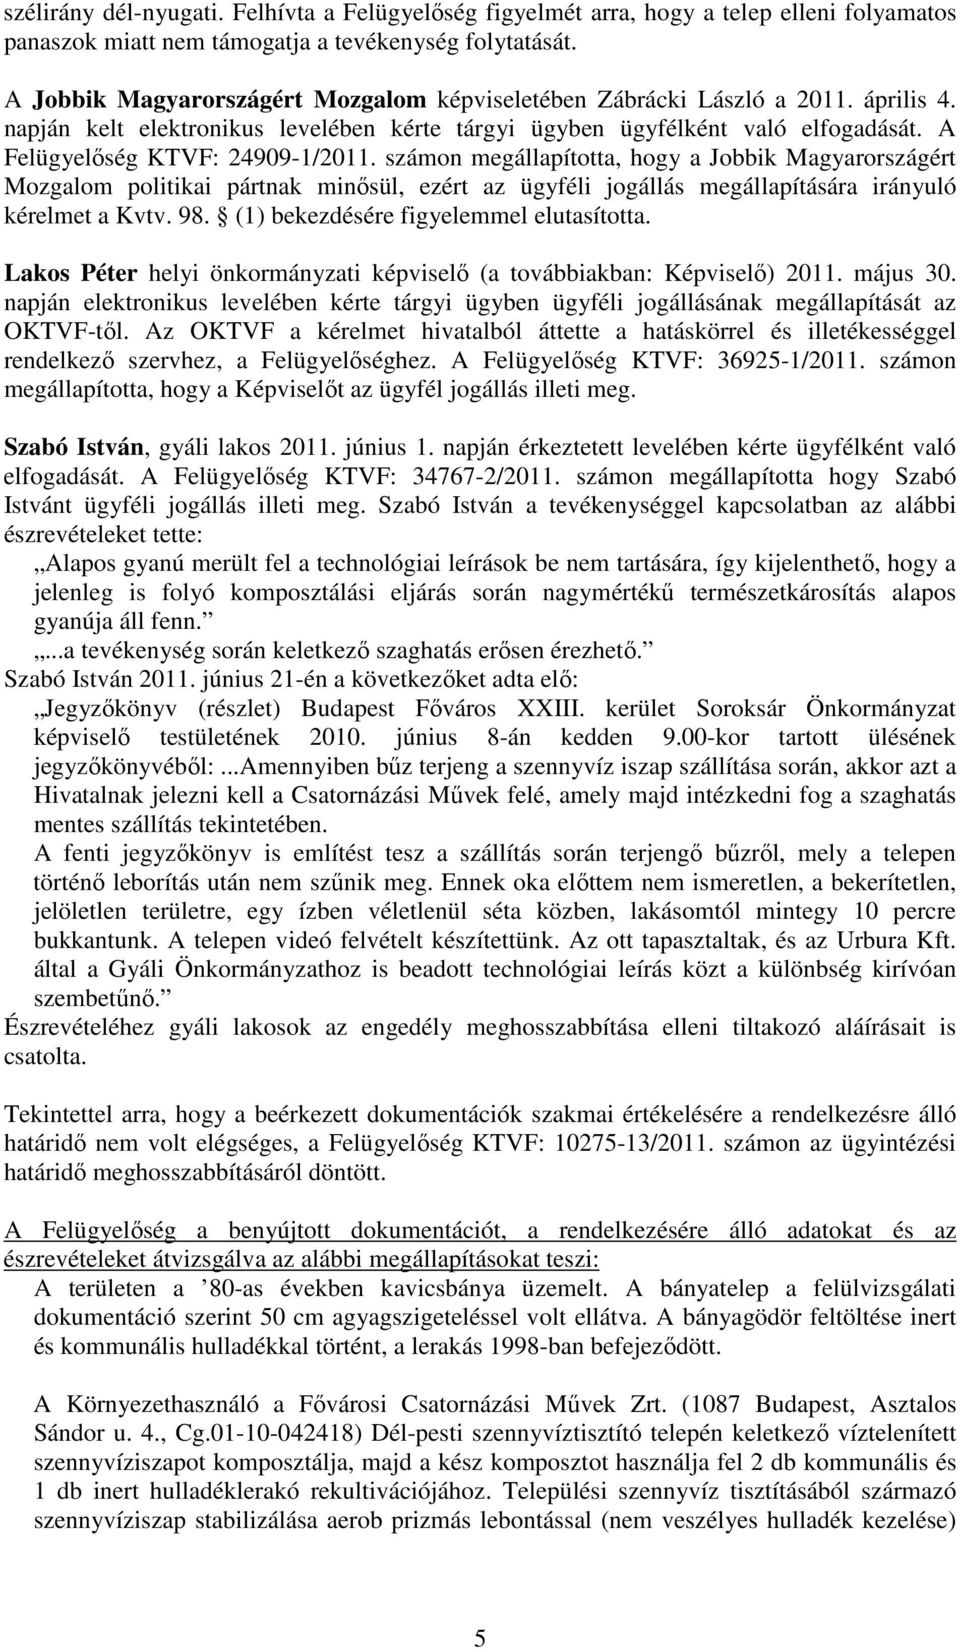 A Felügyelőség KTVF: 24909-1/2011. számon megállapította, hogy a Jobbik Magyarországért Mozgalom politikai pártnak minősül, ezért az ügyféli jogállás megállapítására irányuló kérelmet a Kvtv. 98.